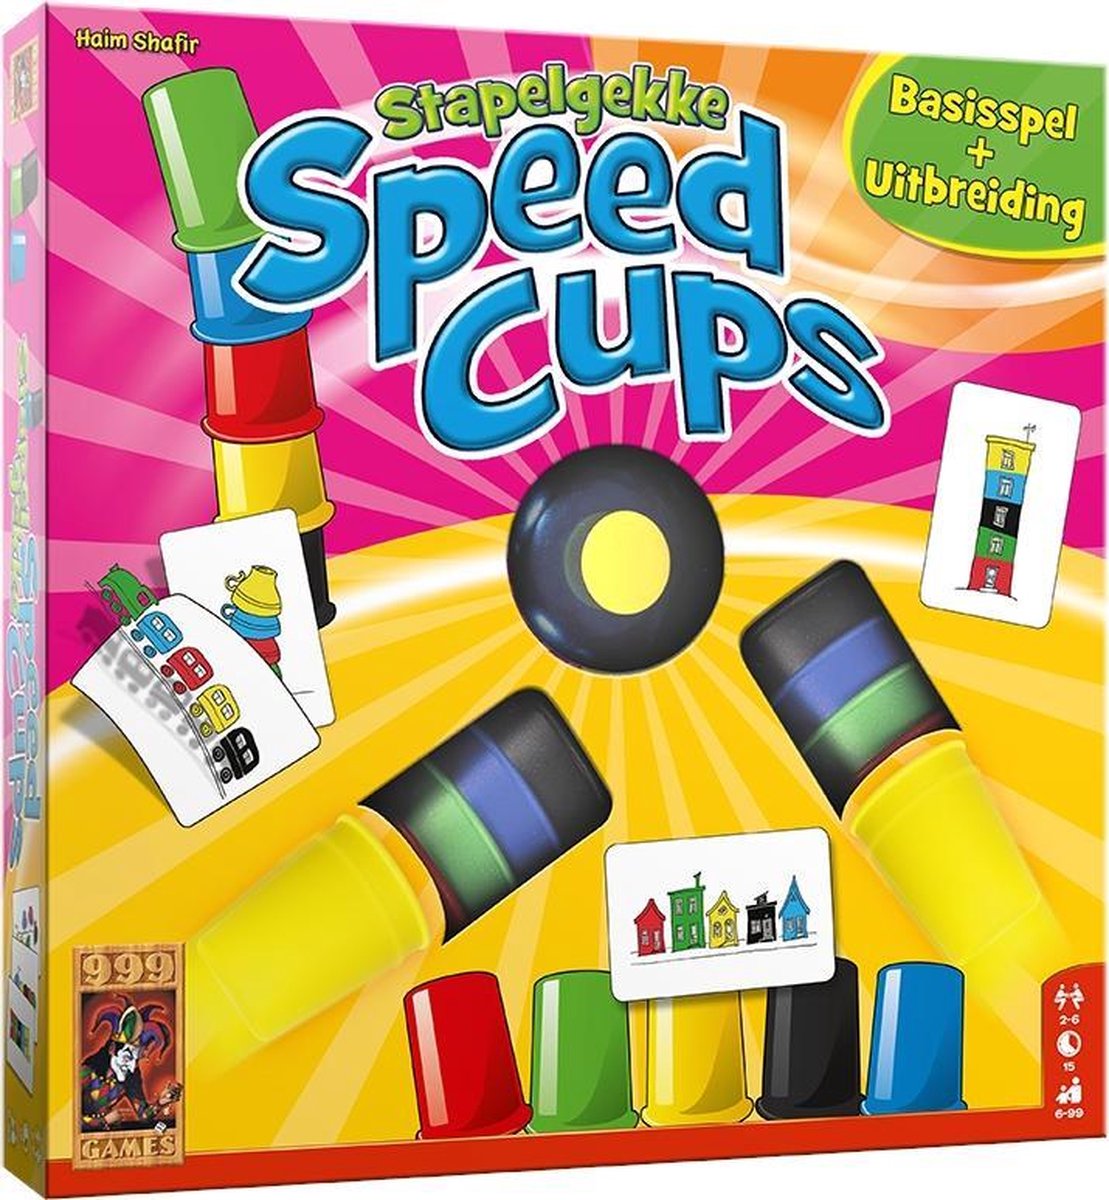 Stapelgekke Speedcups - 6 spelers -spel